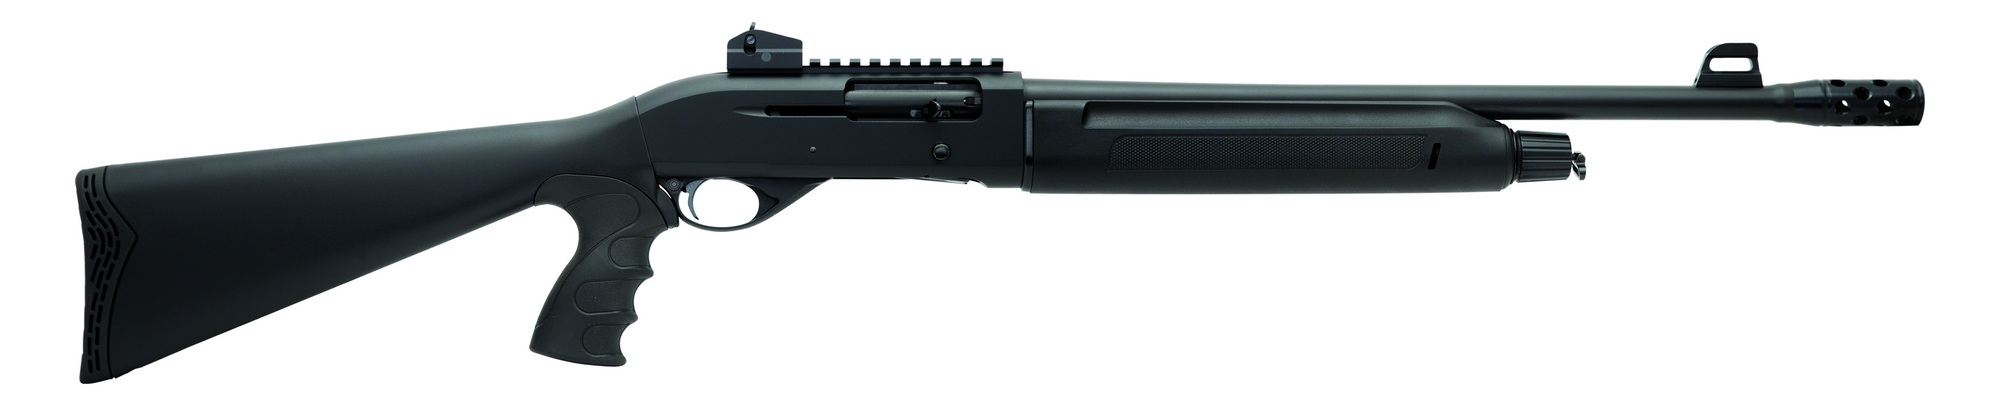 Sulun Arms Sg-319.